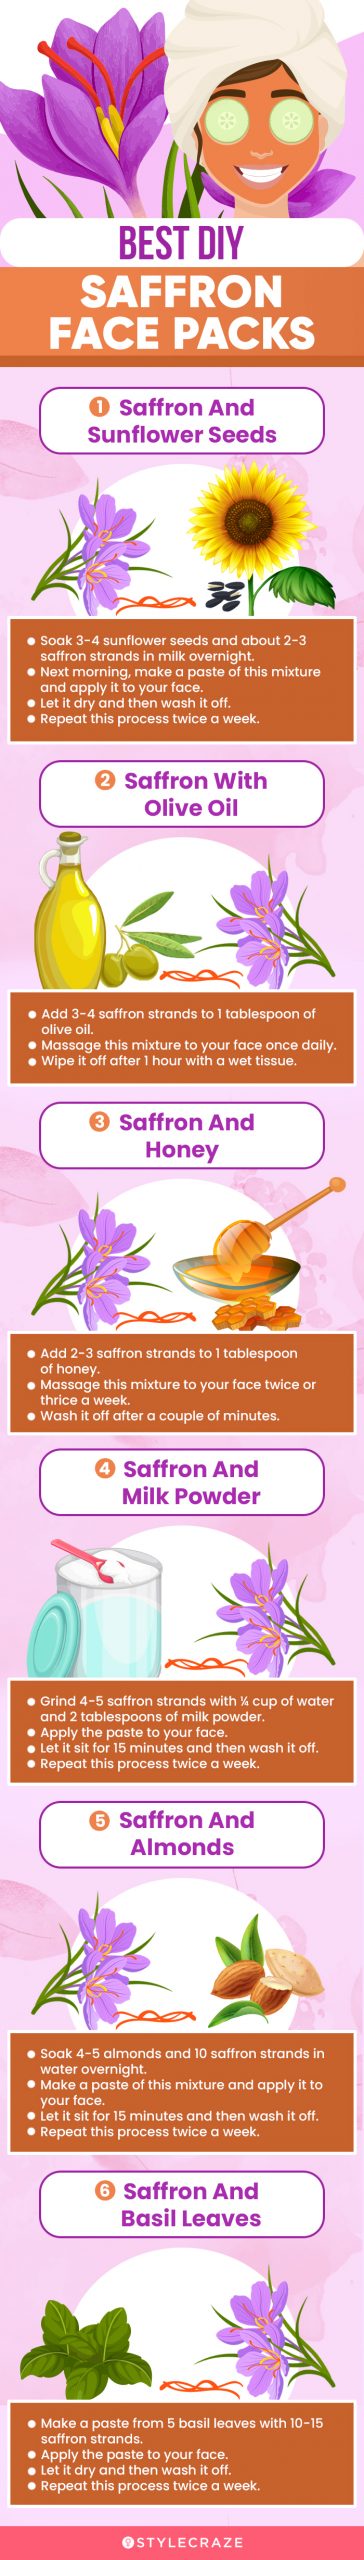 best diy saffron face packs [infographic]